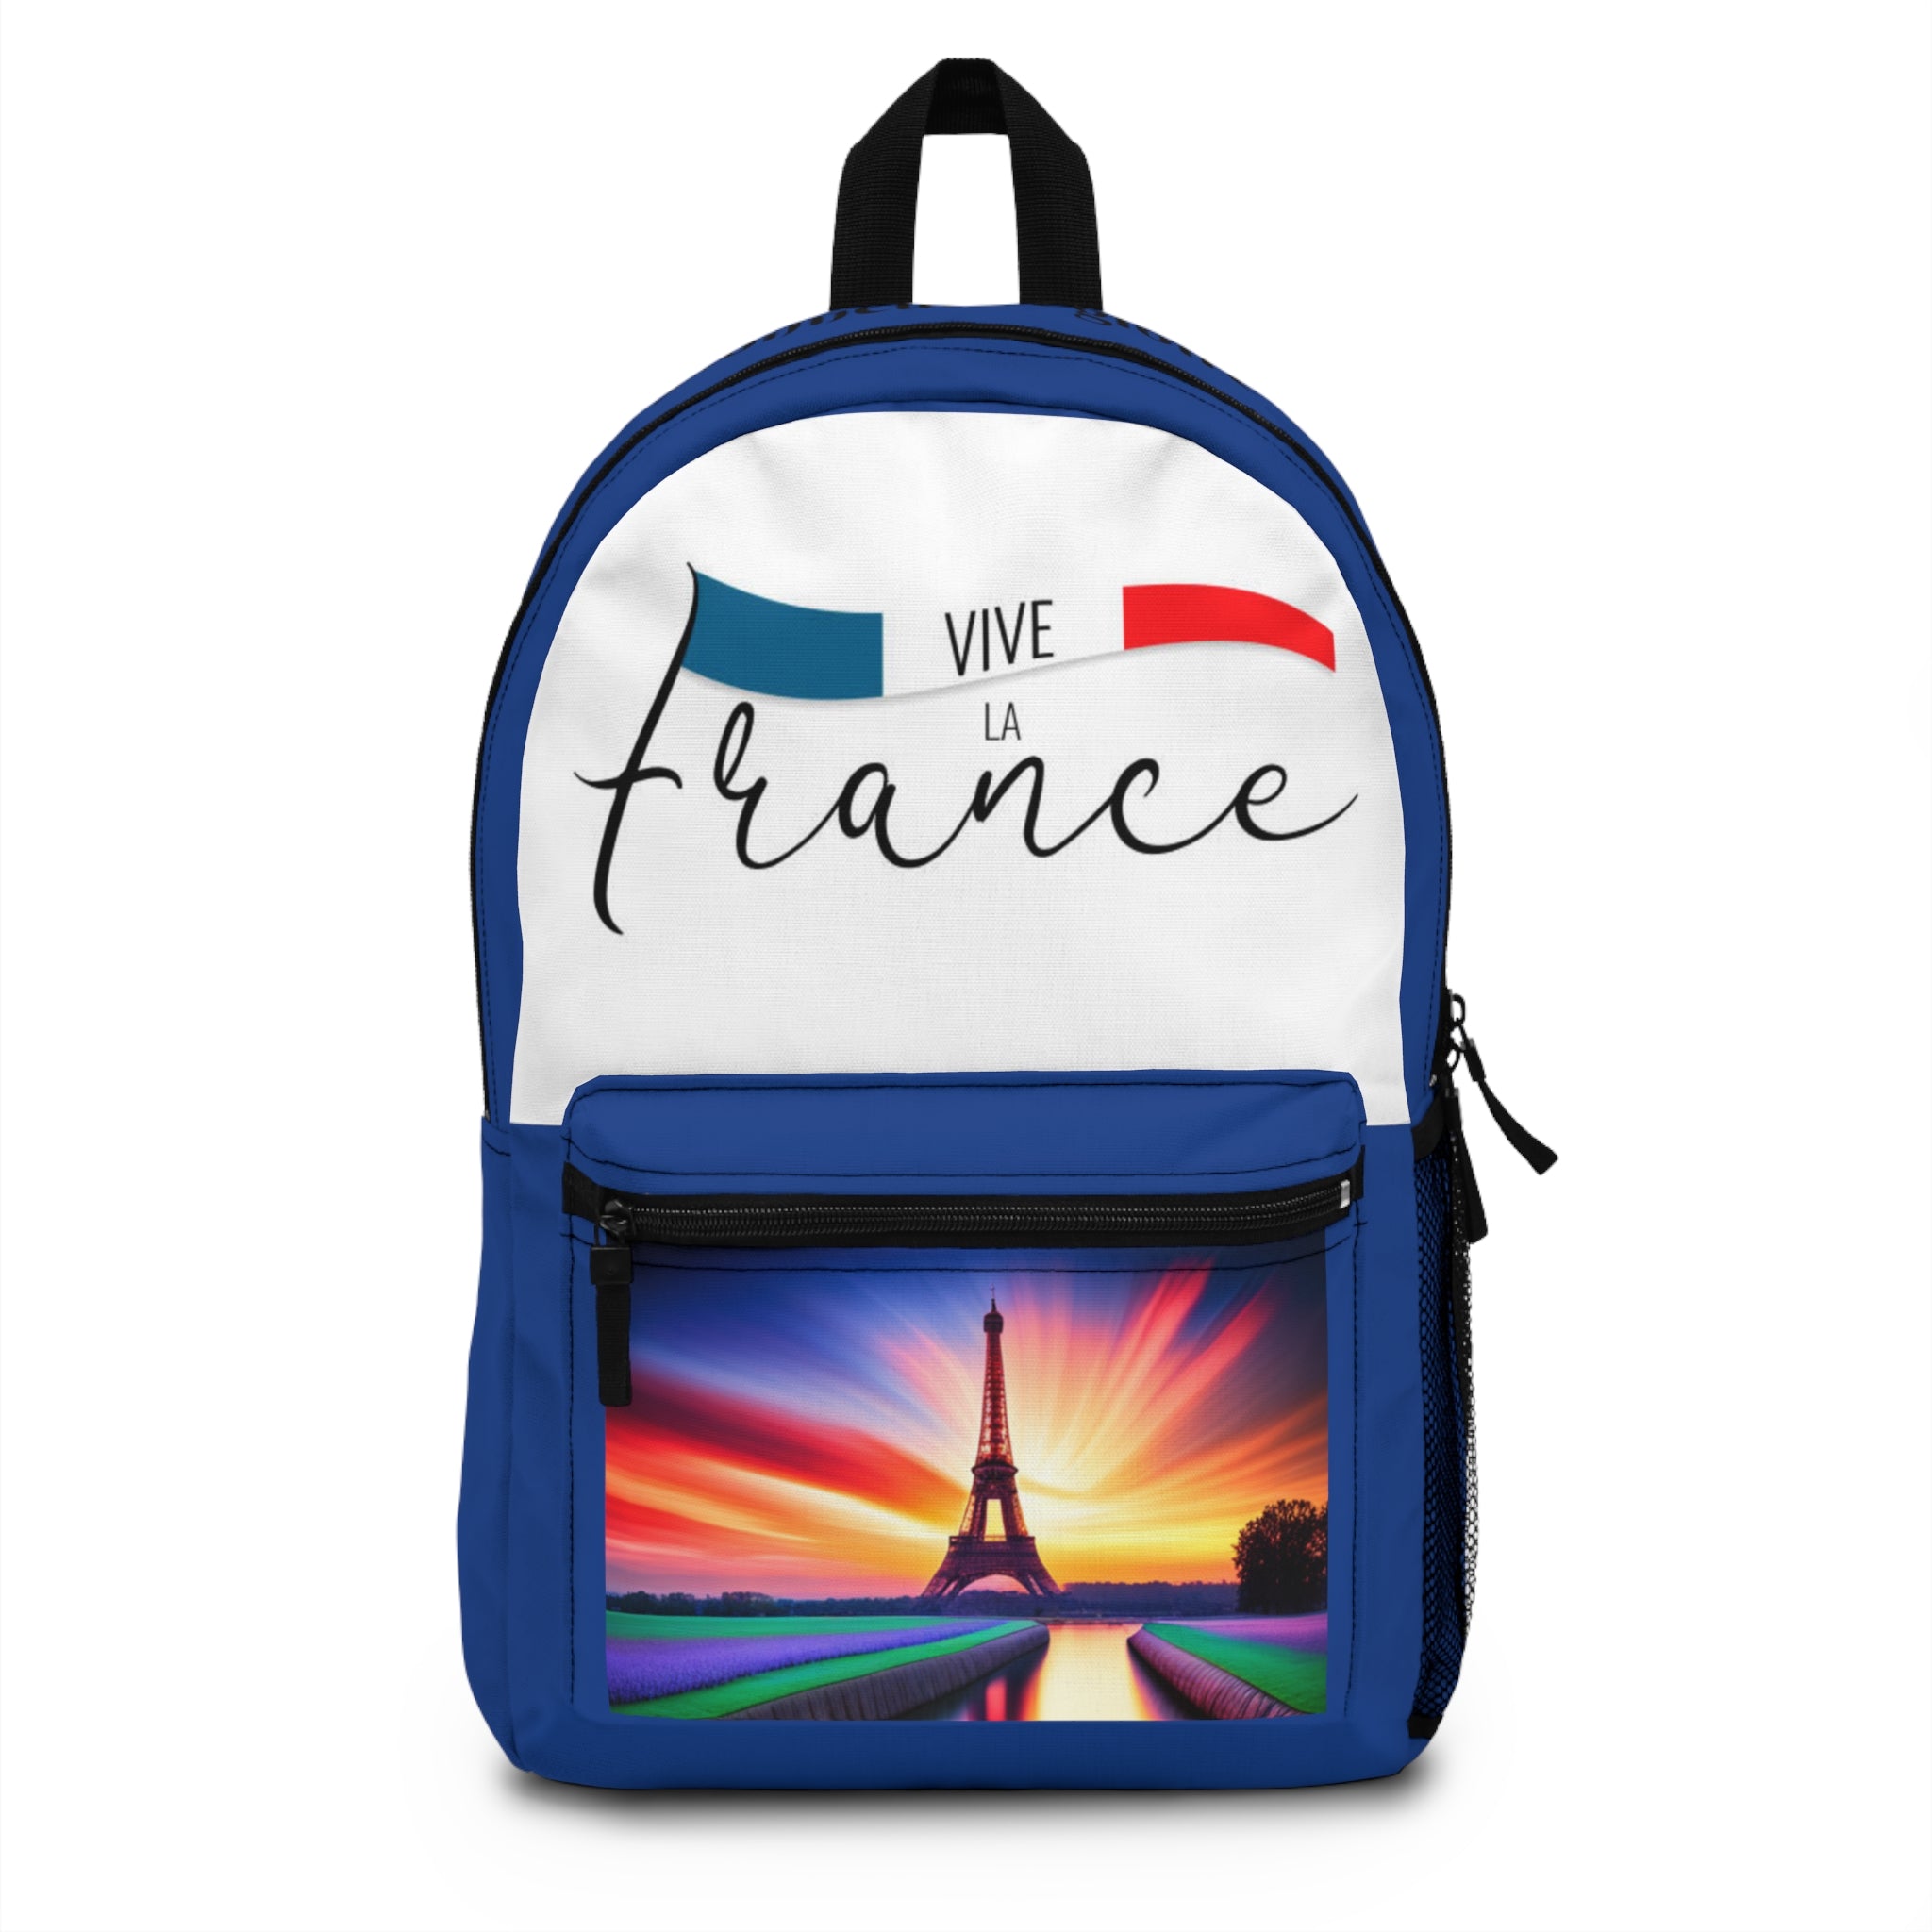 Backpack France - Honneur et gloire